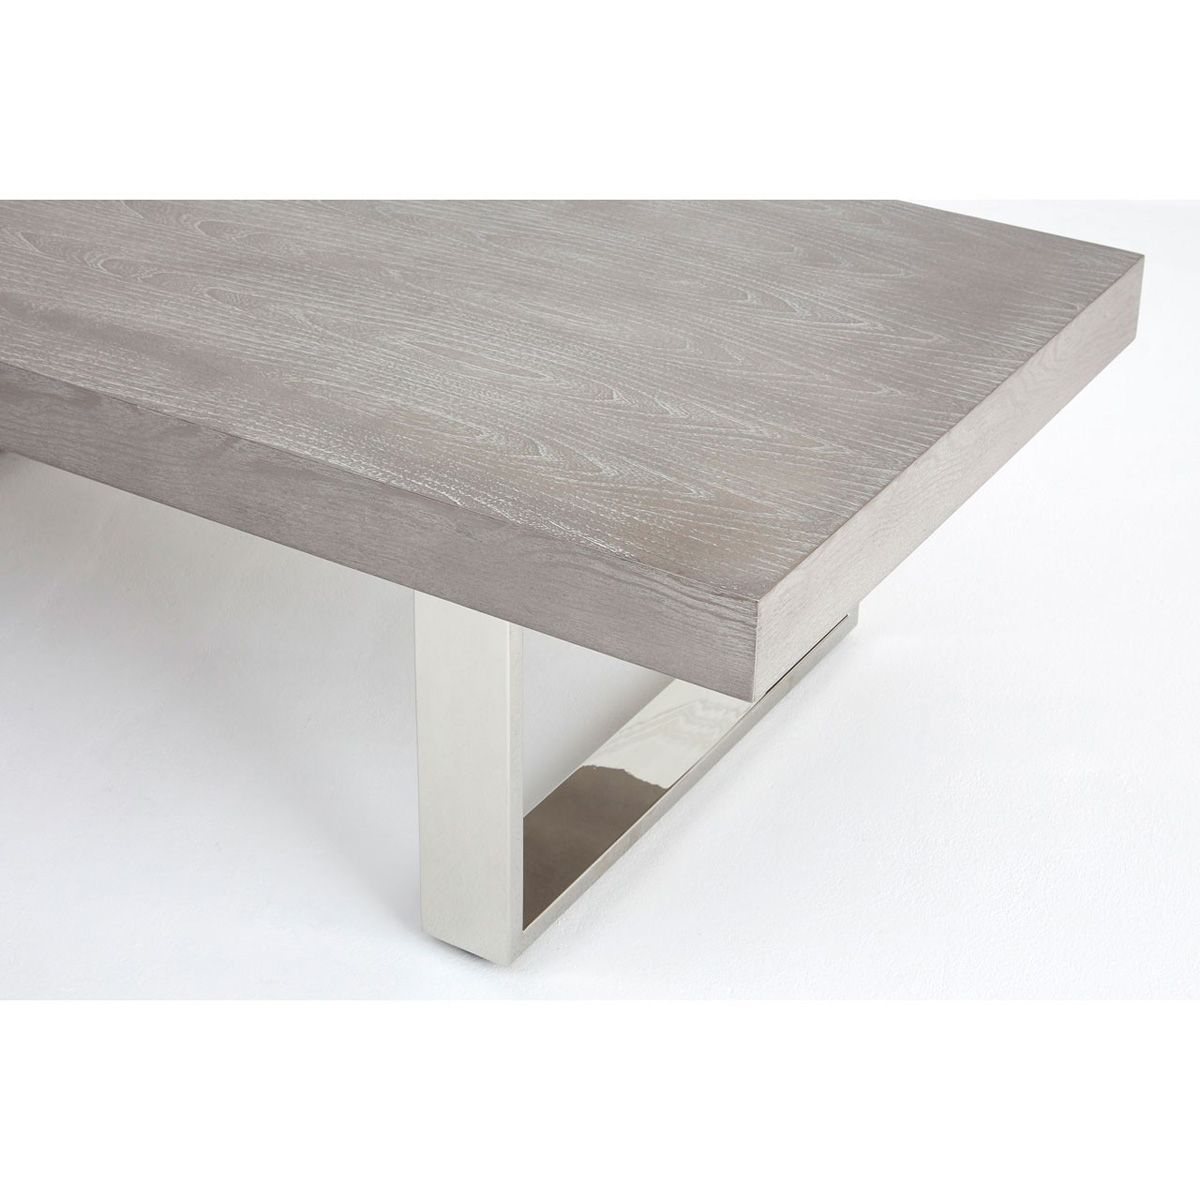 Grey Elm Wood Coffee Table – Stainless Steel Legs (View 12 of 20)